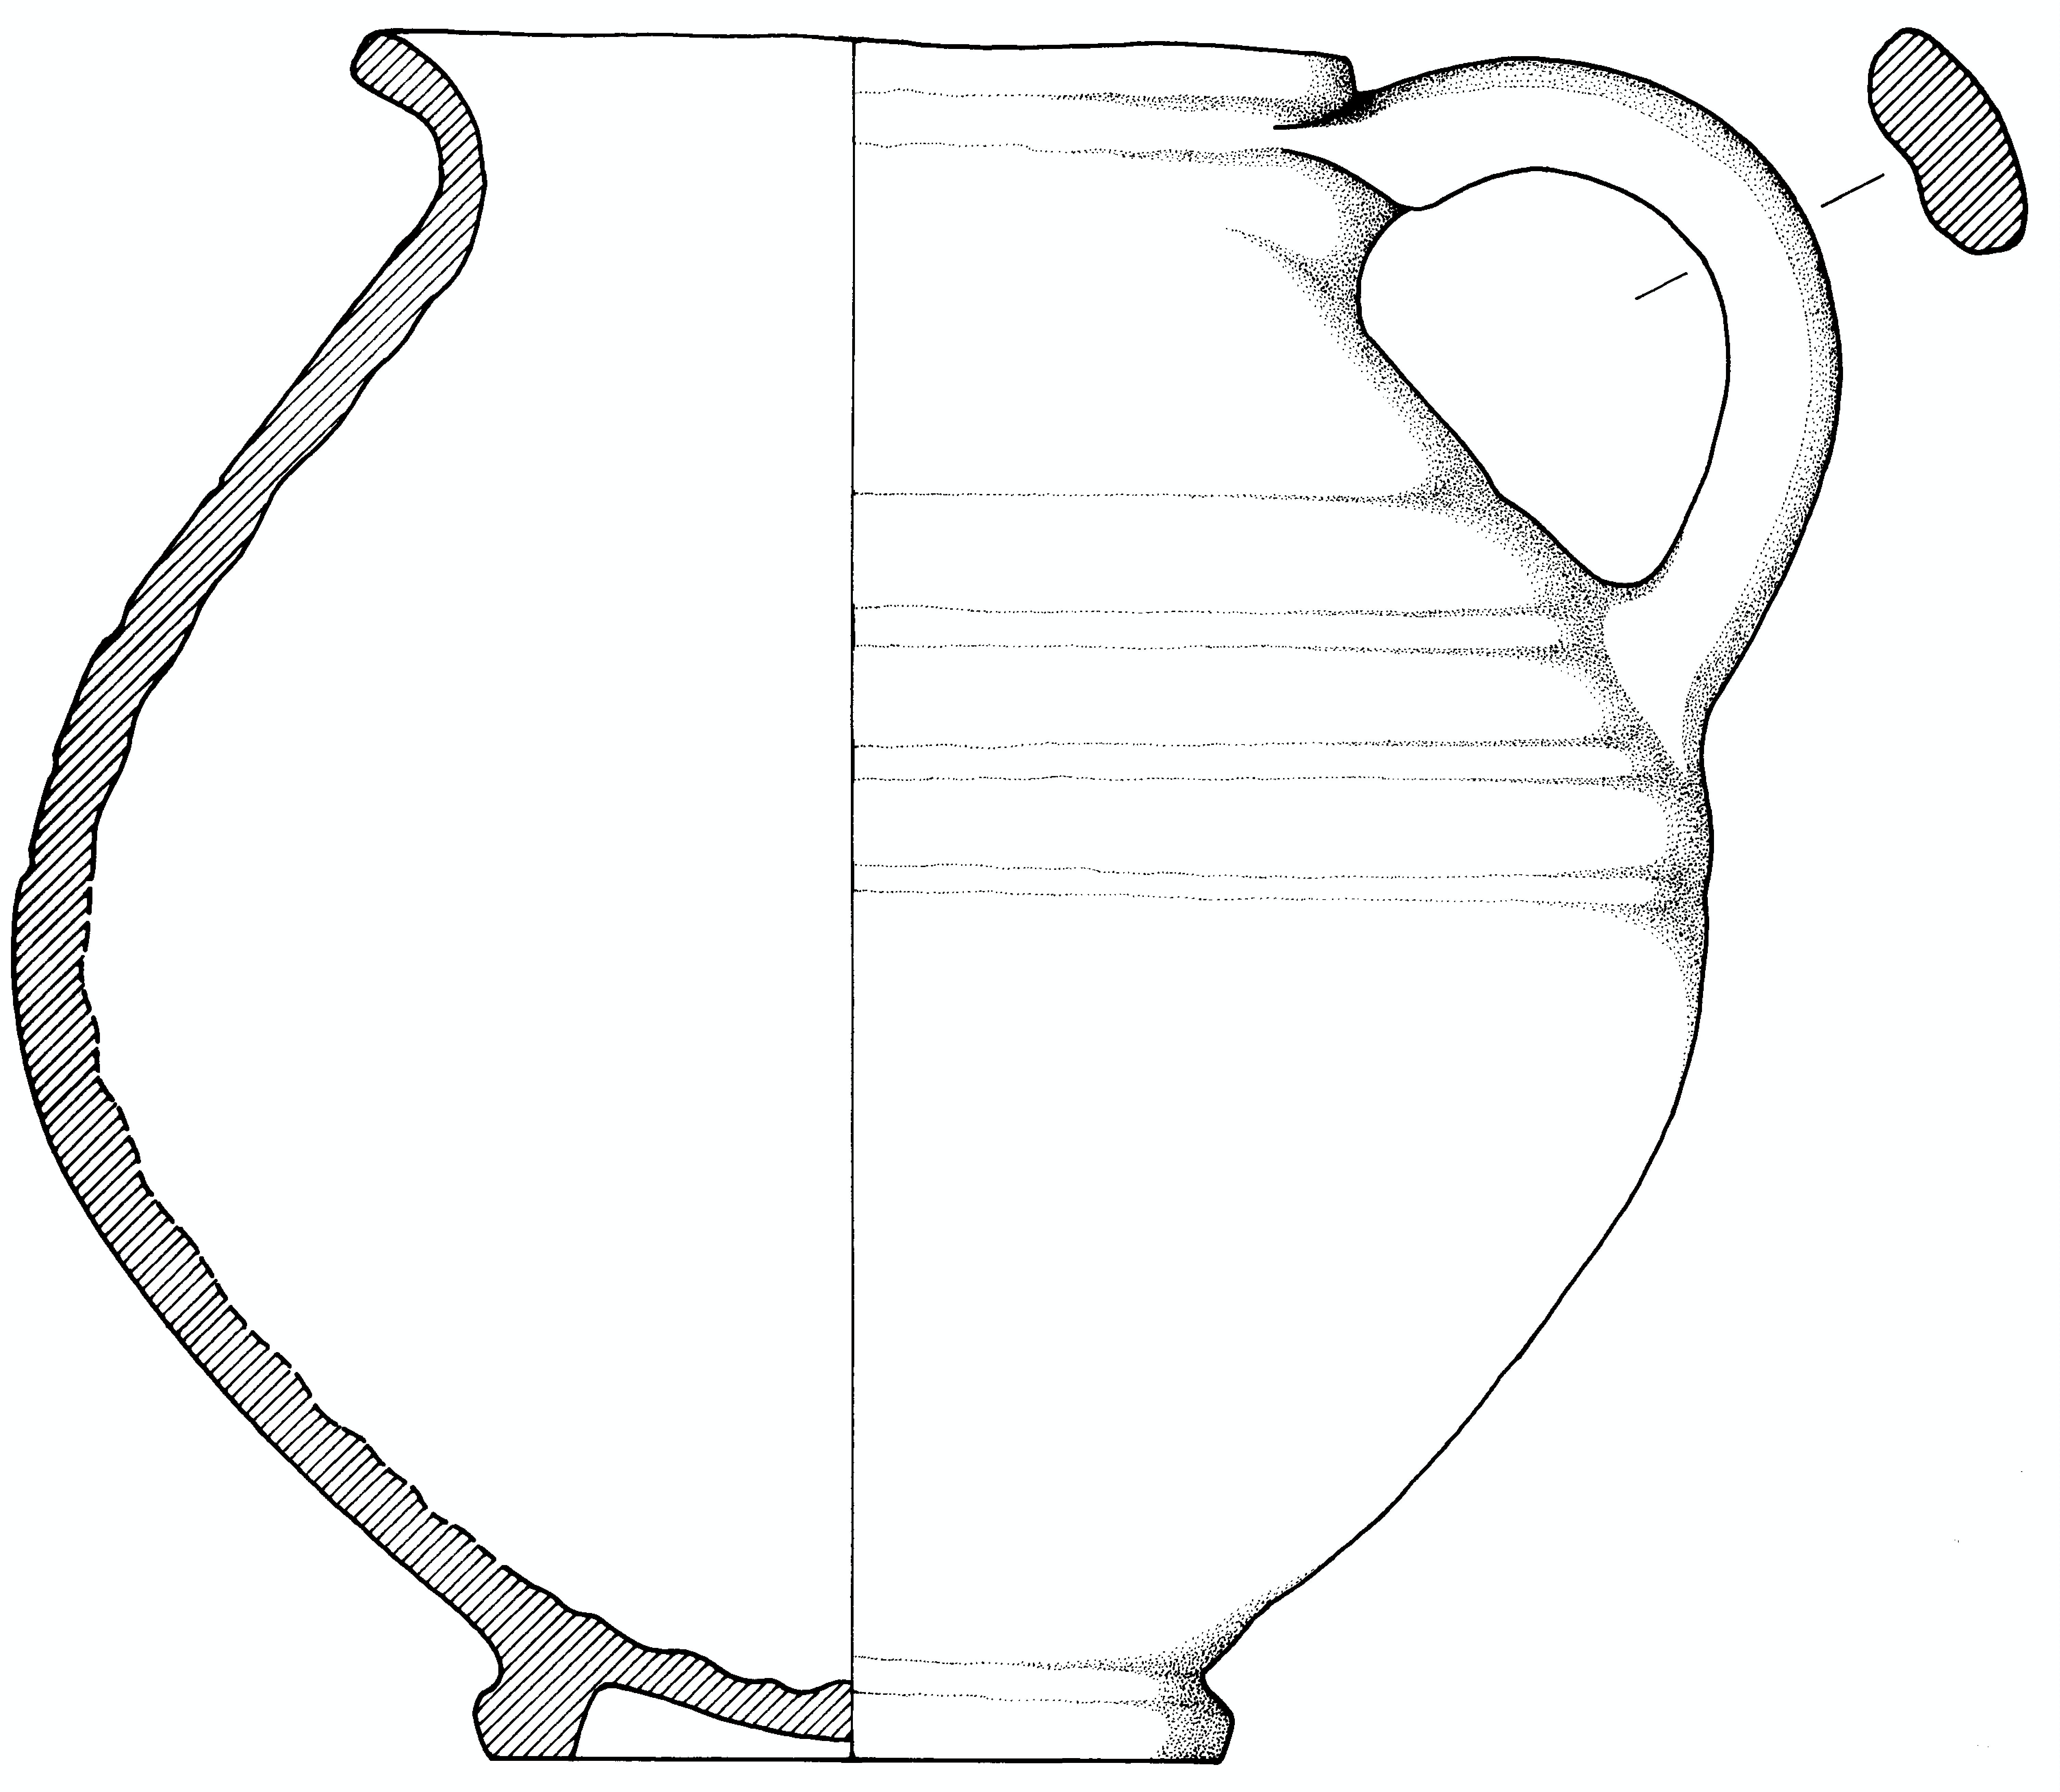 brocca, cineraria (fine/primo quarto IV-III a.C)